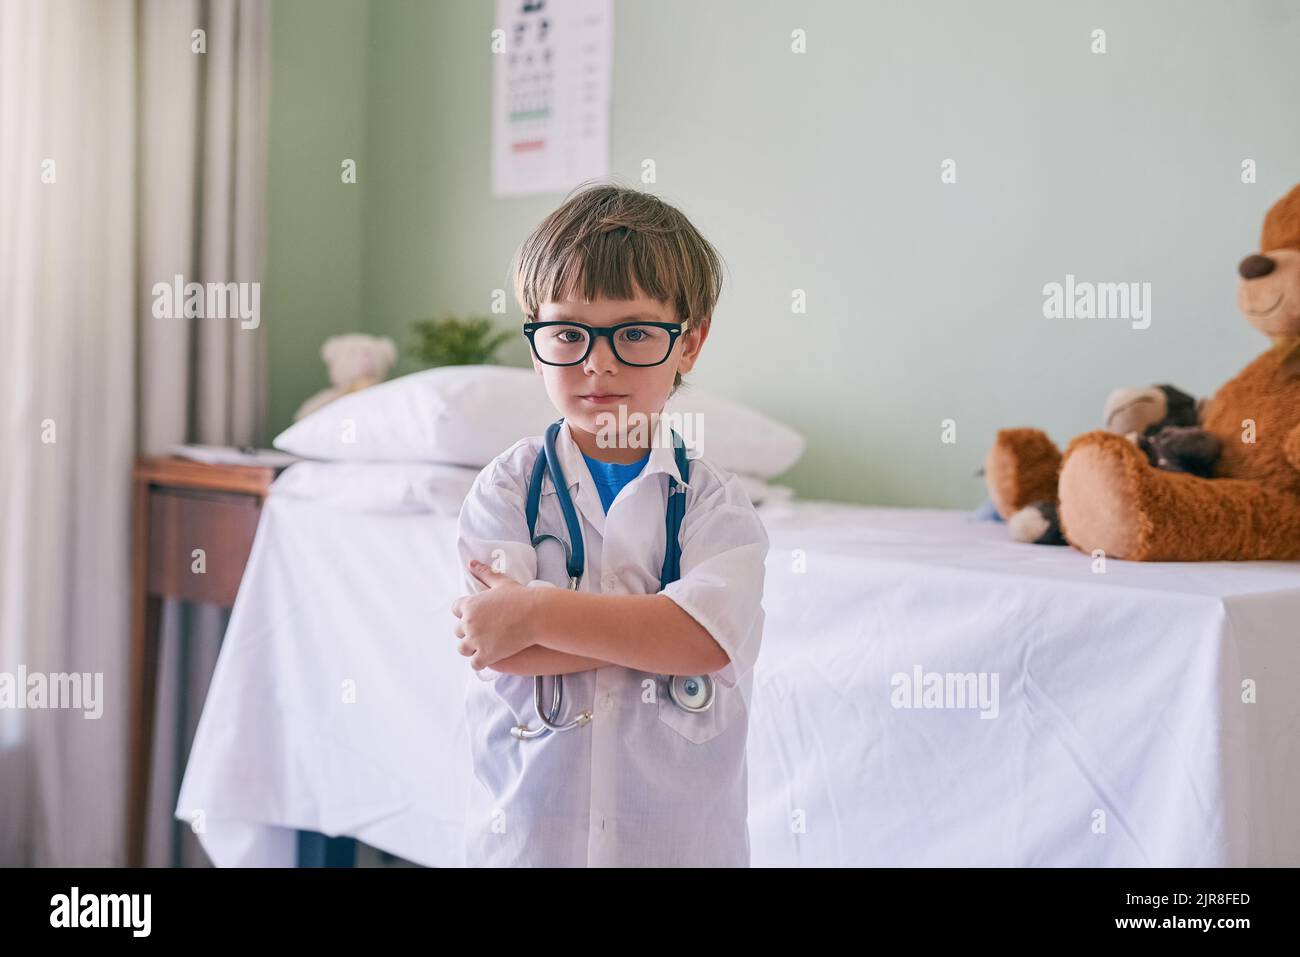 Lasciate che il vostro bambino sviluppi i propri interessi: Un adorabile ragazzino vestito da medico. Foto Stock